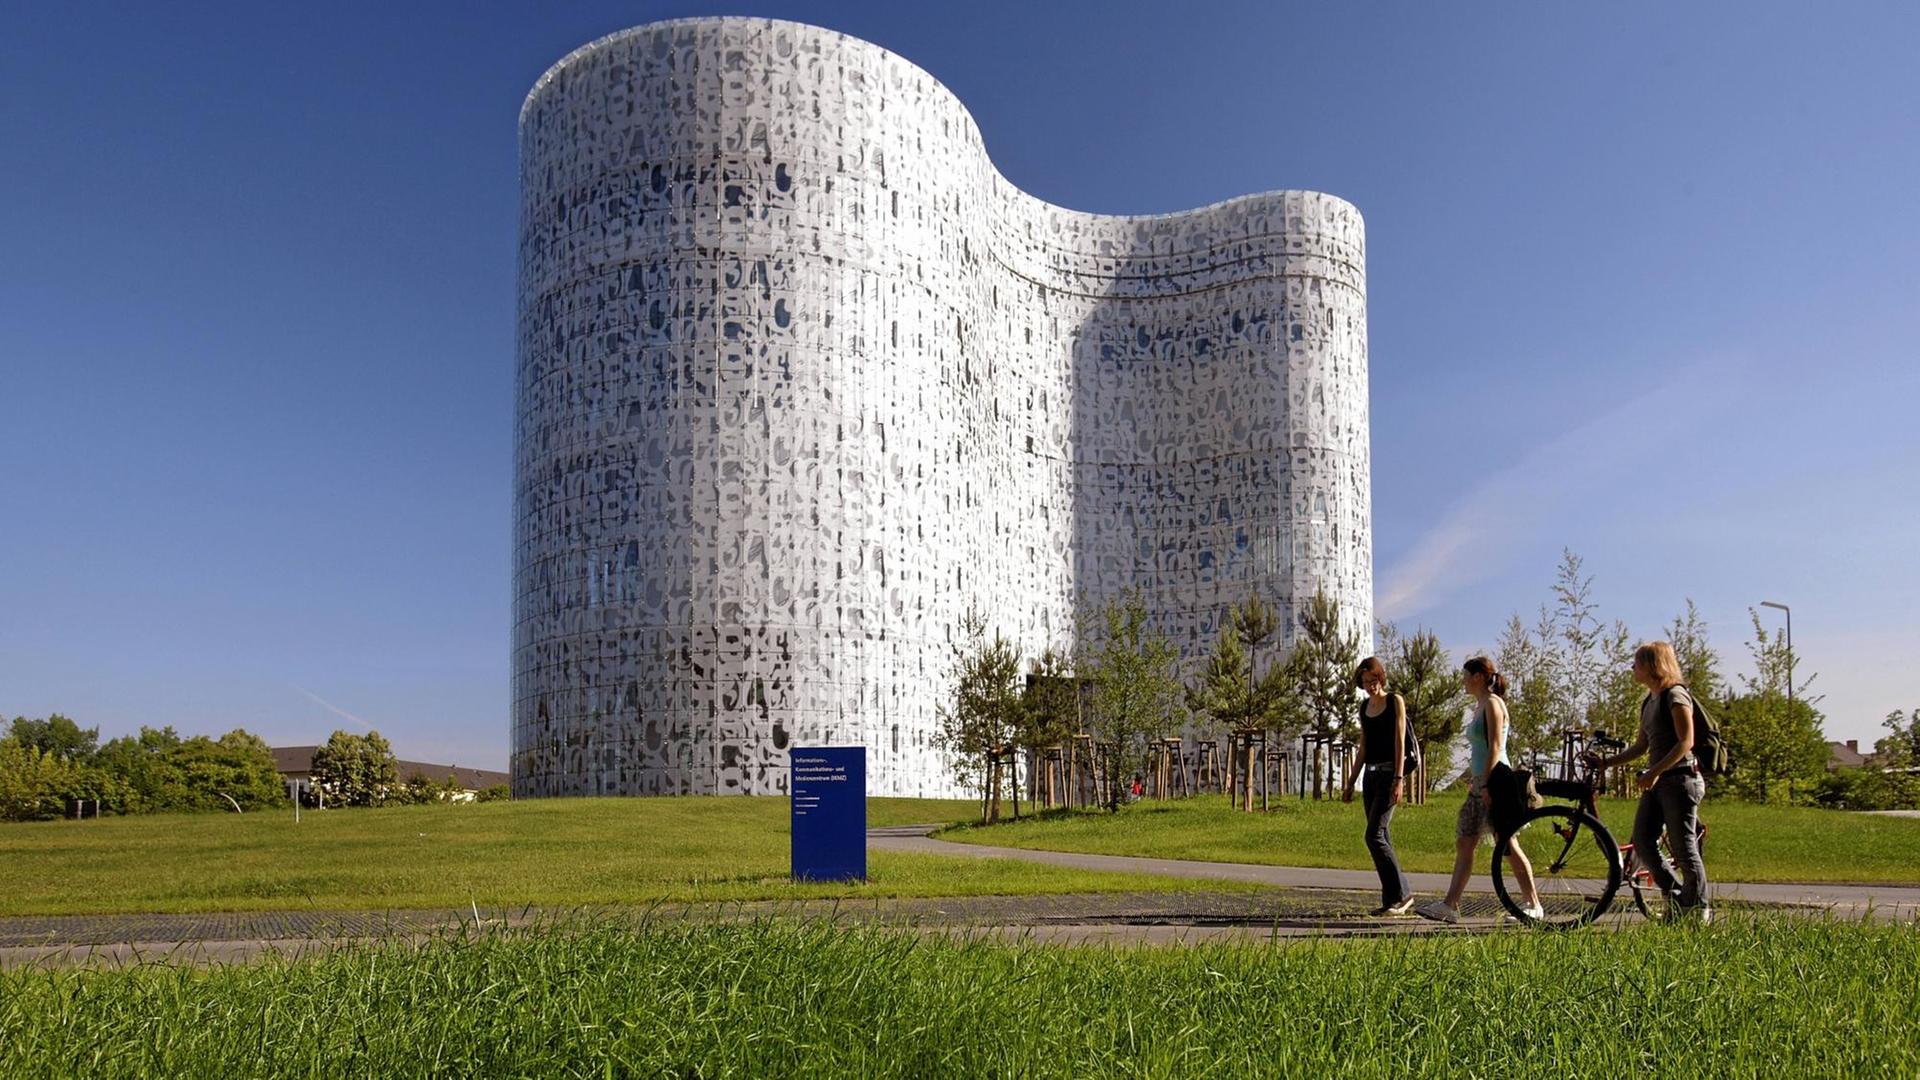 Der futuristisch anmutende Bau des Kommunikations- und Medienzentrums auf dem Campus BTU Cottbus, Brandenburgs einziger technischer Hochschule